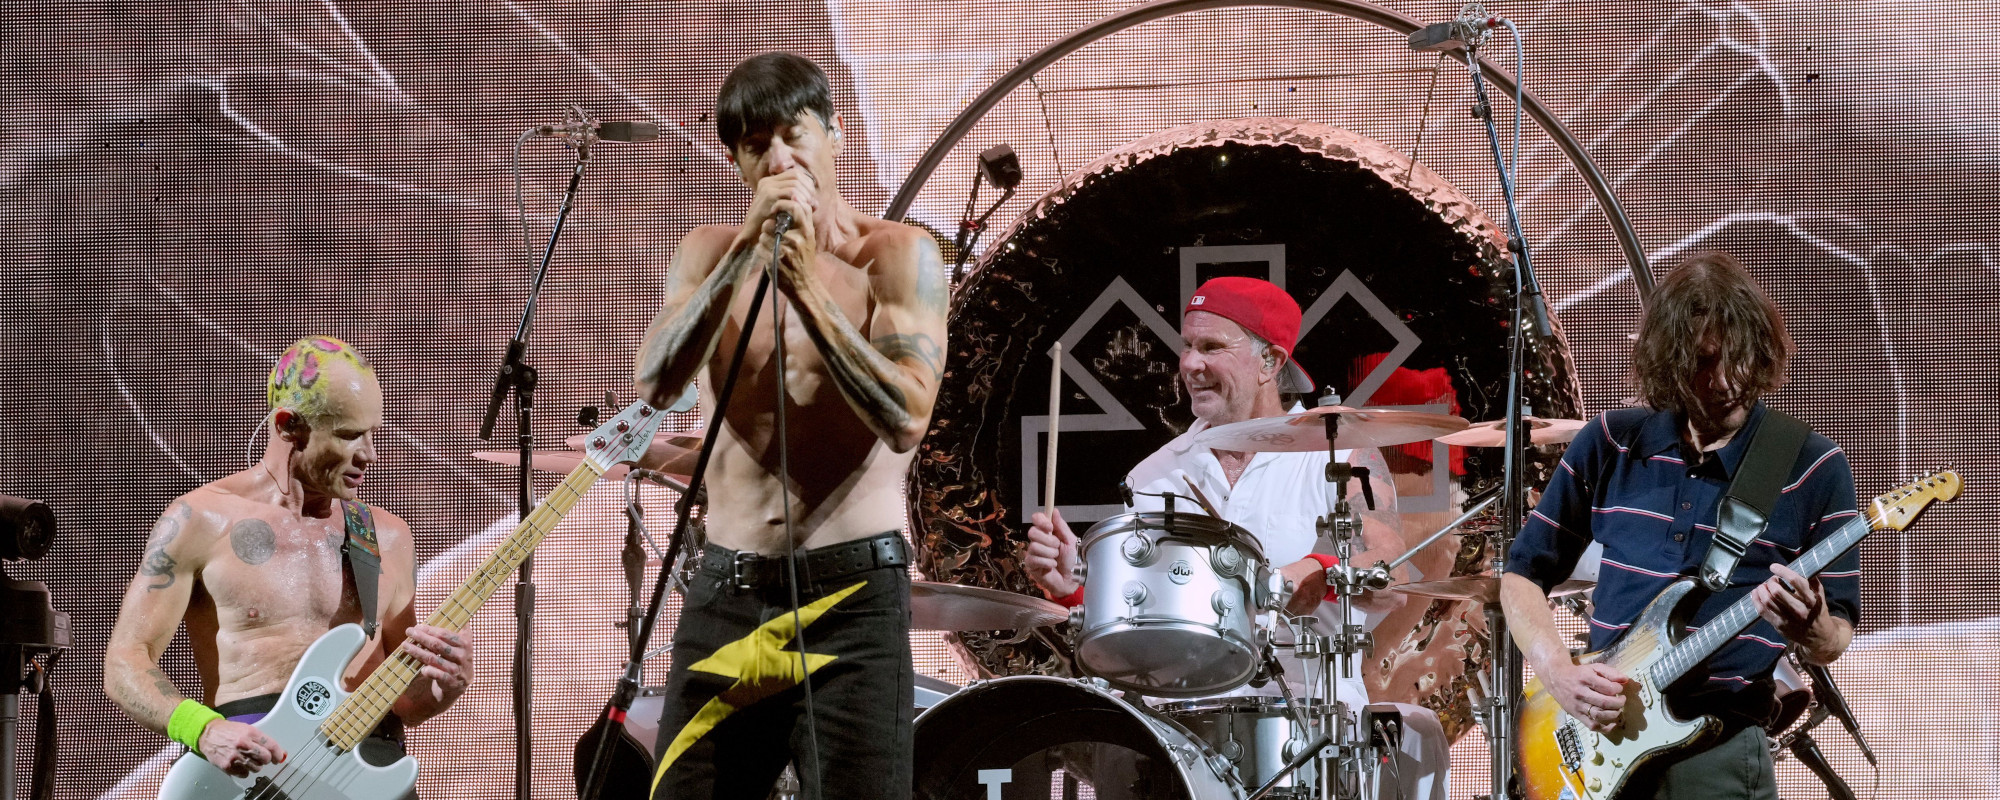 Red Hot Chili Peppers Release Eddie Van Halen Tribute Song “Eddie”